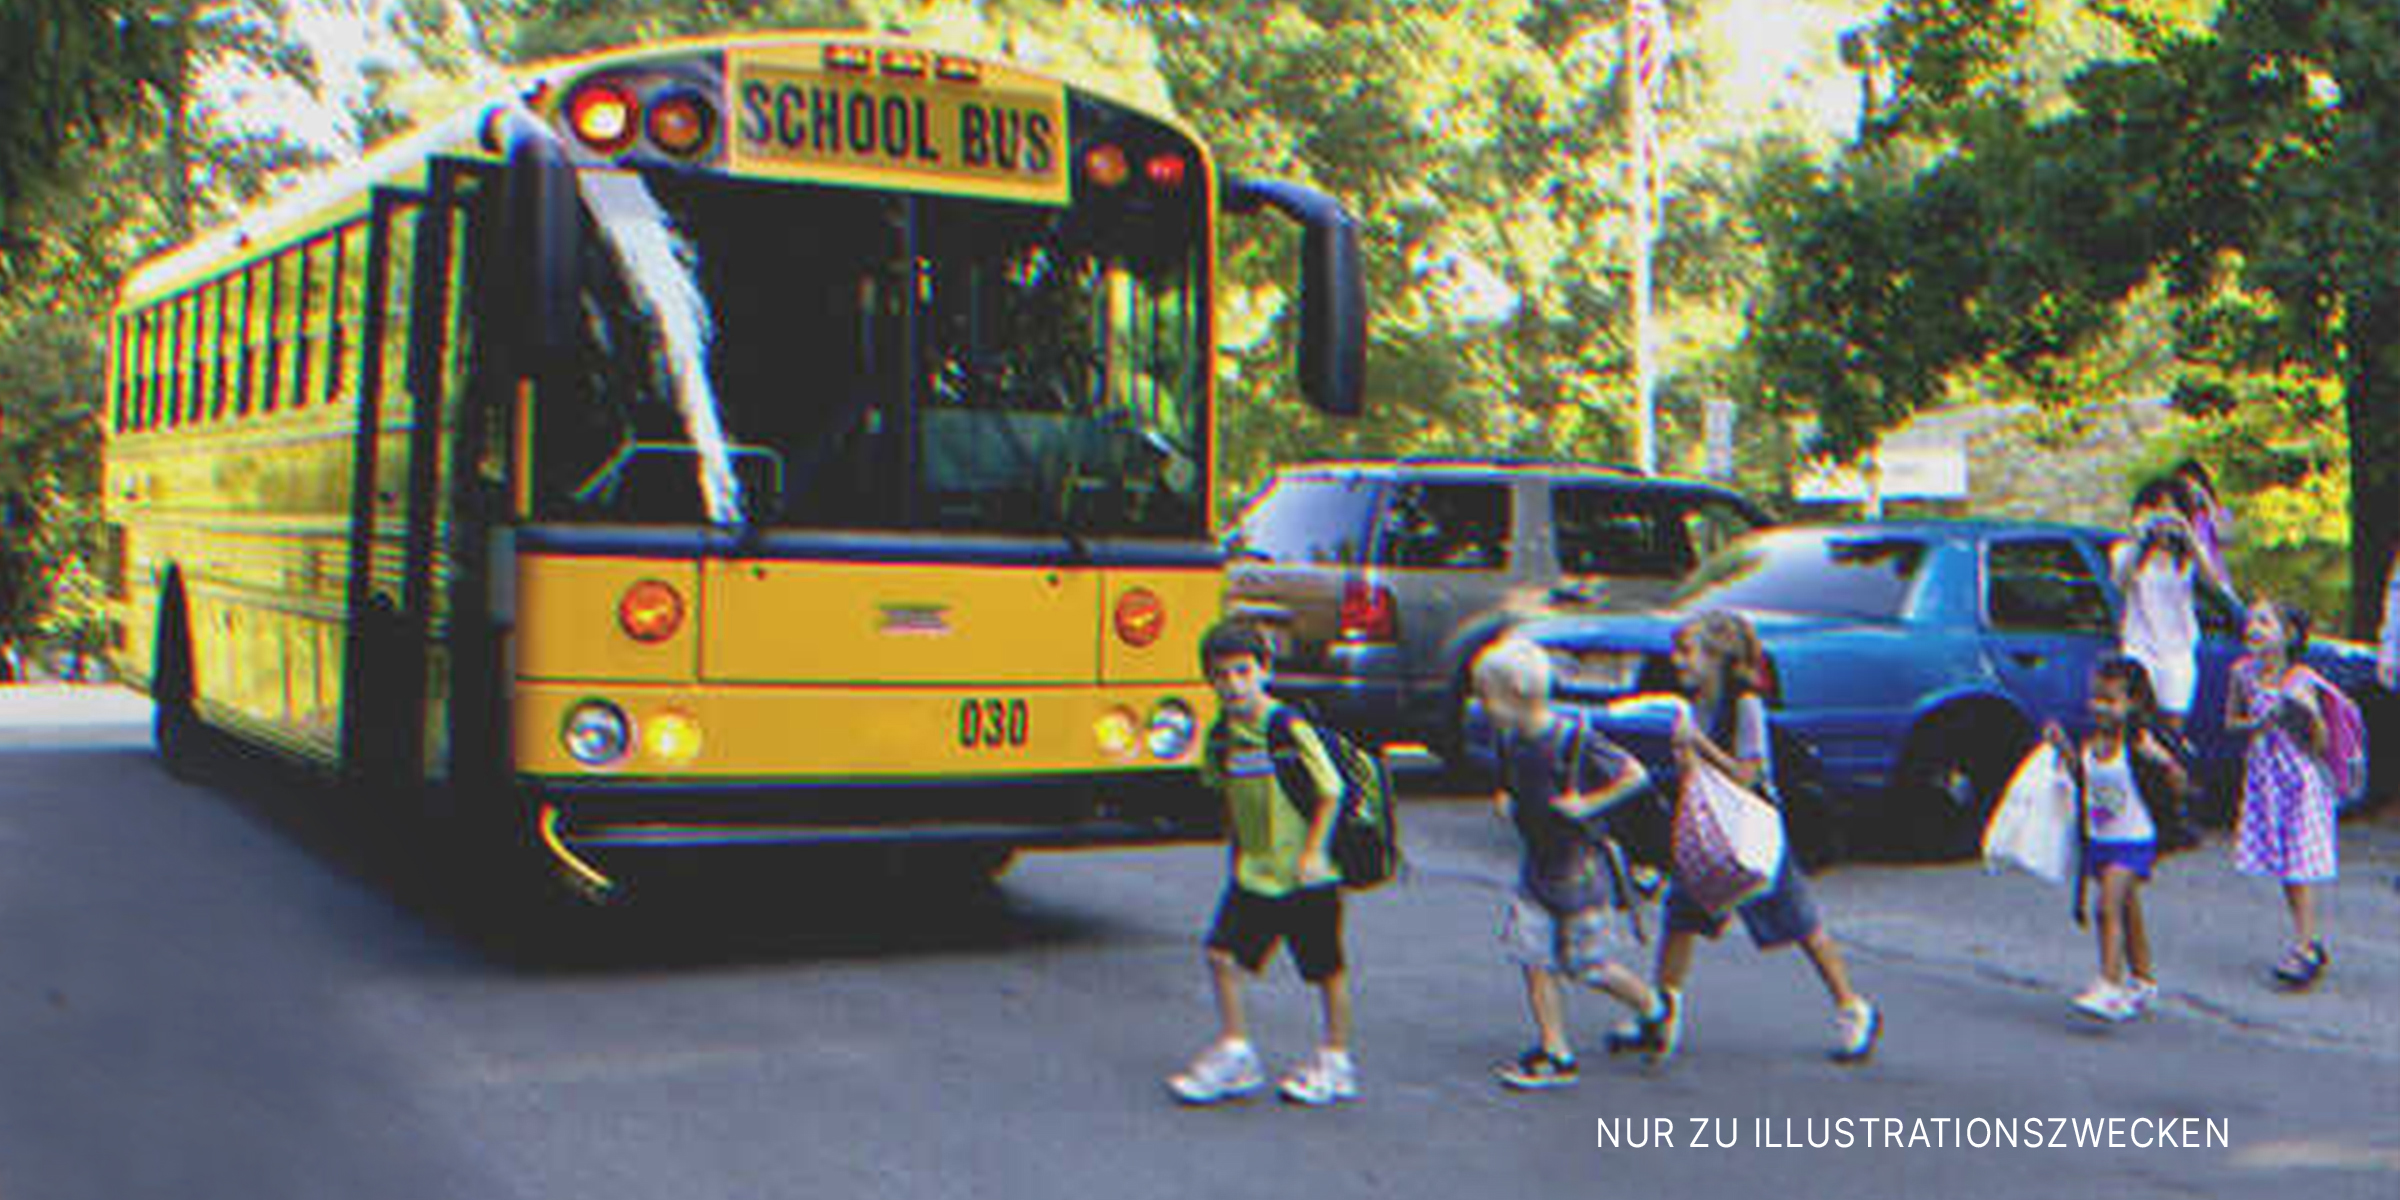 Kinder gehen zum Schulbus. | Quelle: Flickr / woodleywonderworks (CC BY 2.0)